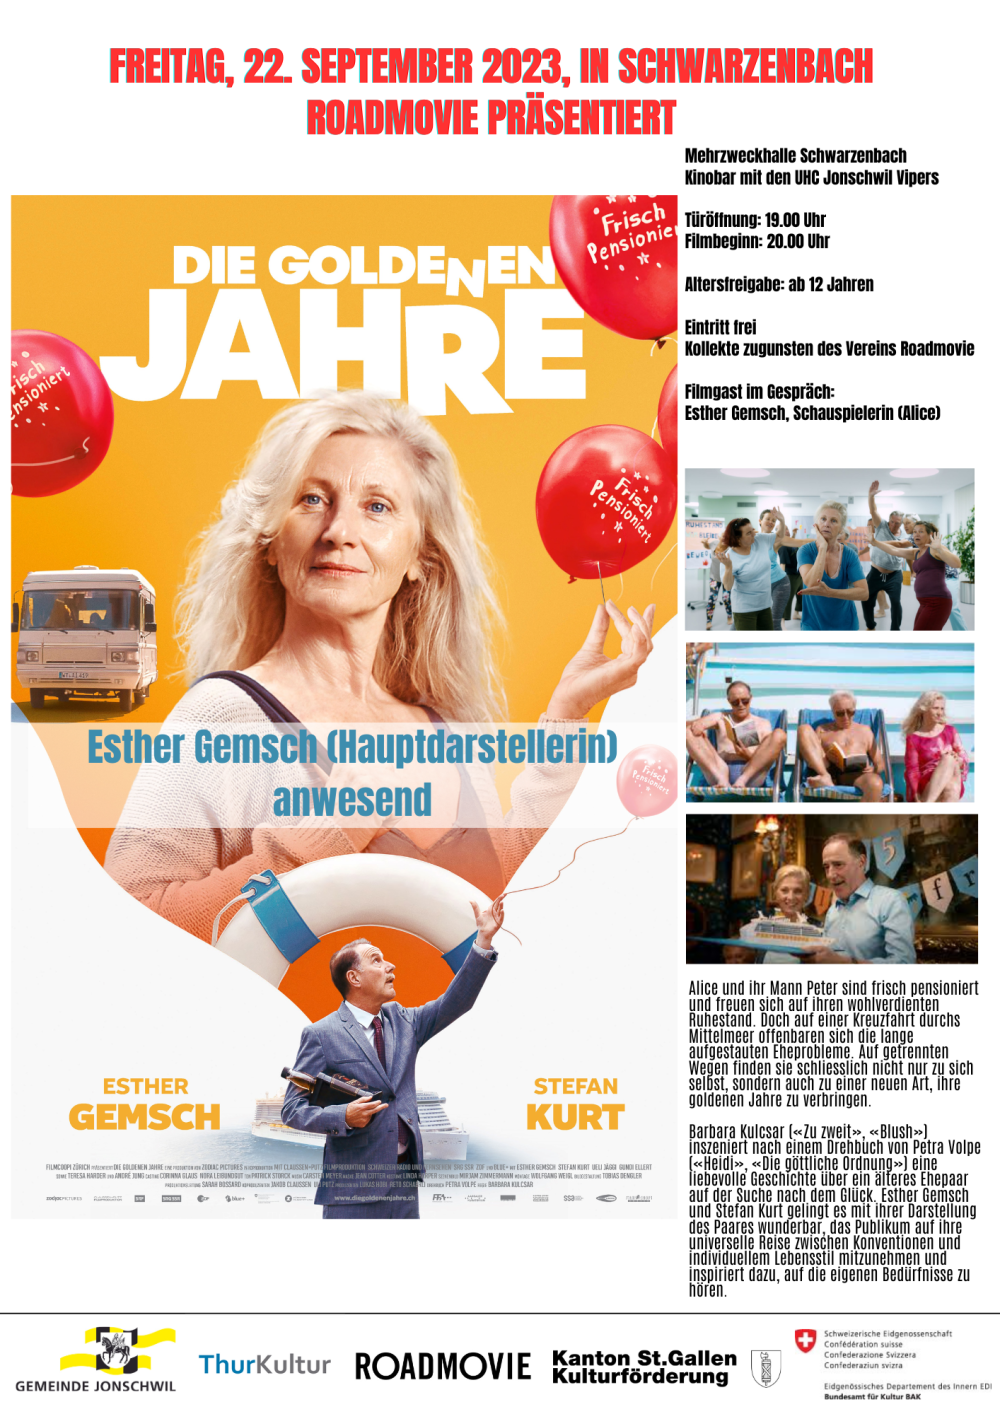 Roadmovie präsentiert Filmvorführung "Die goldenen Jahre" (1/1)